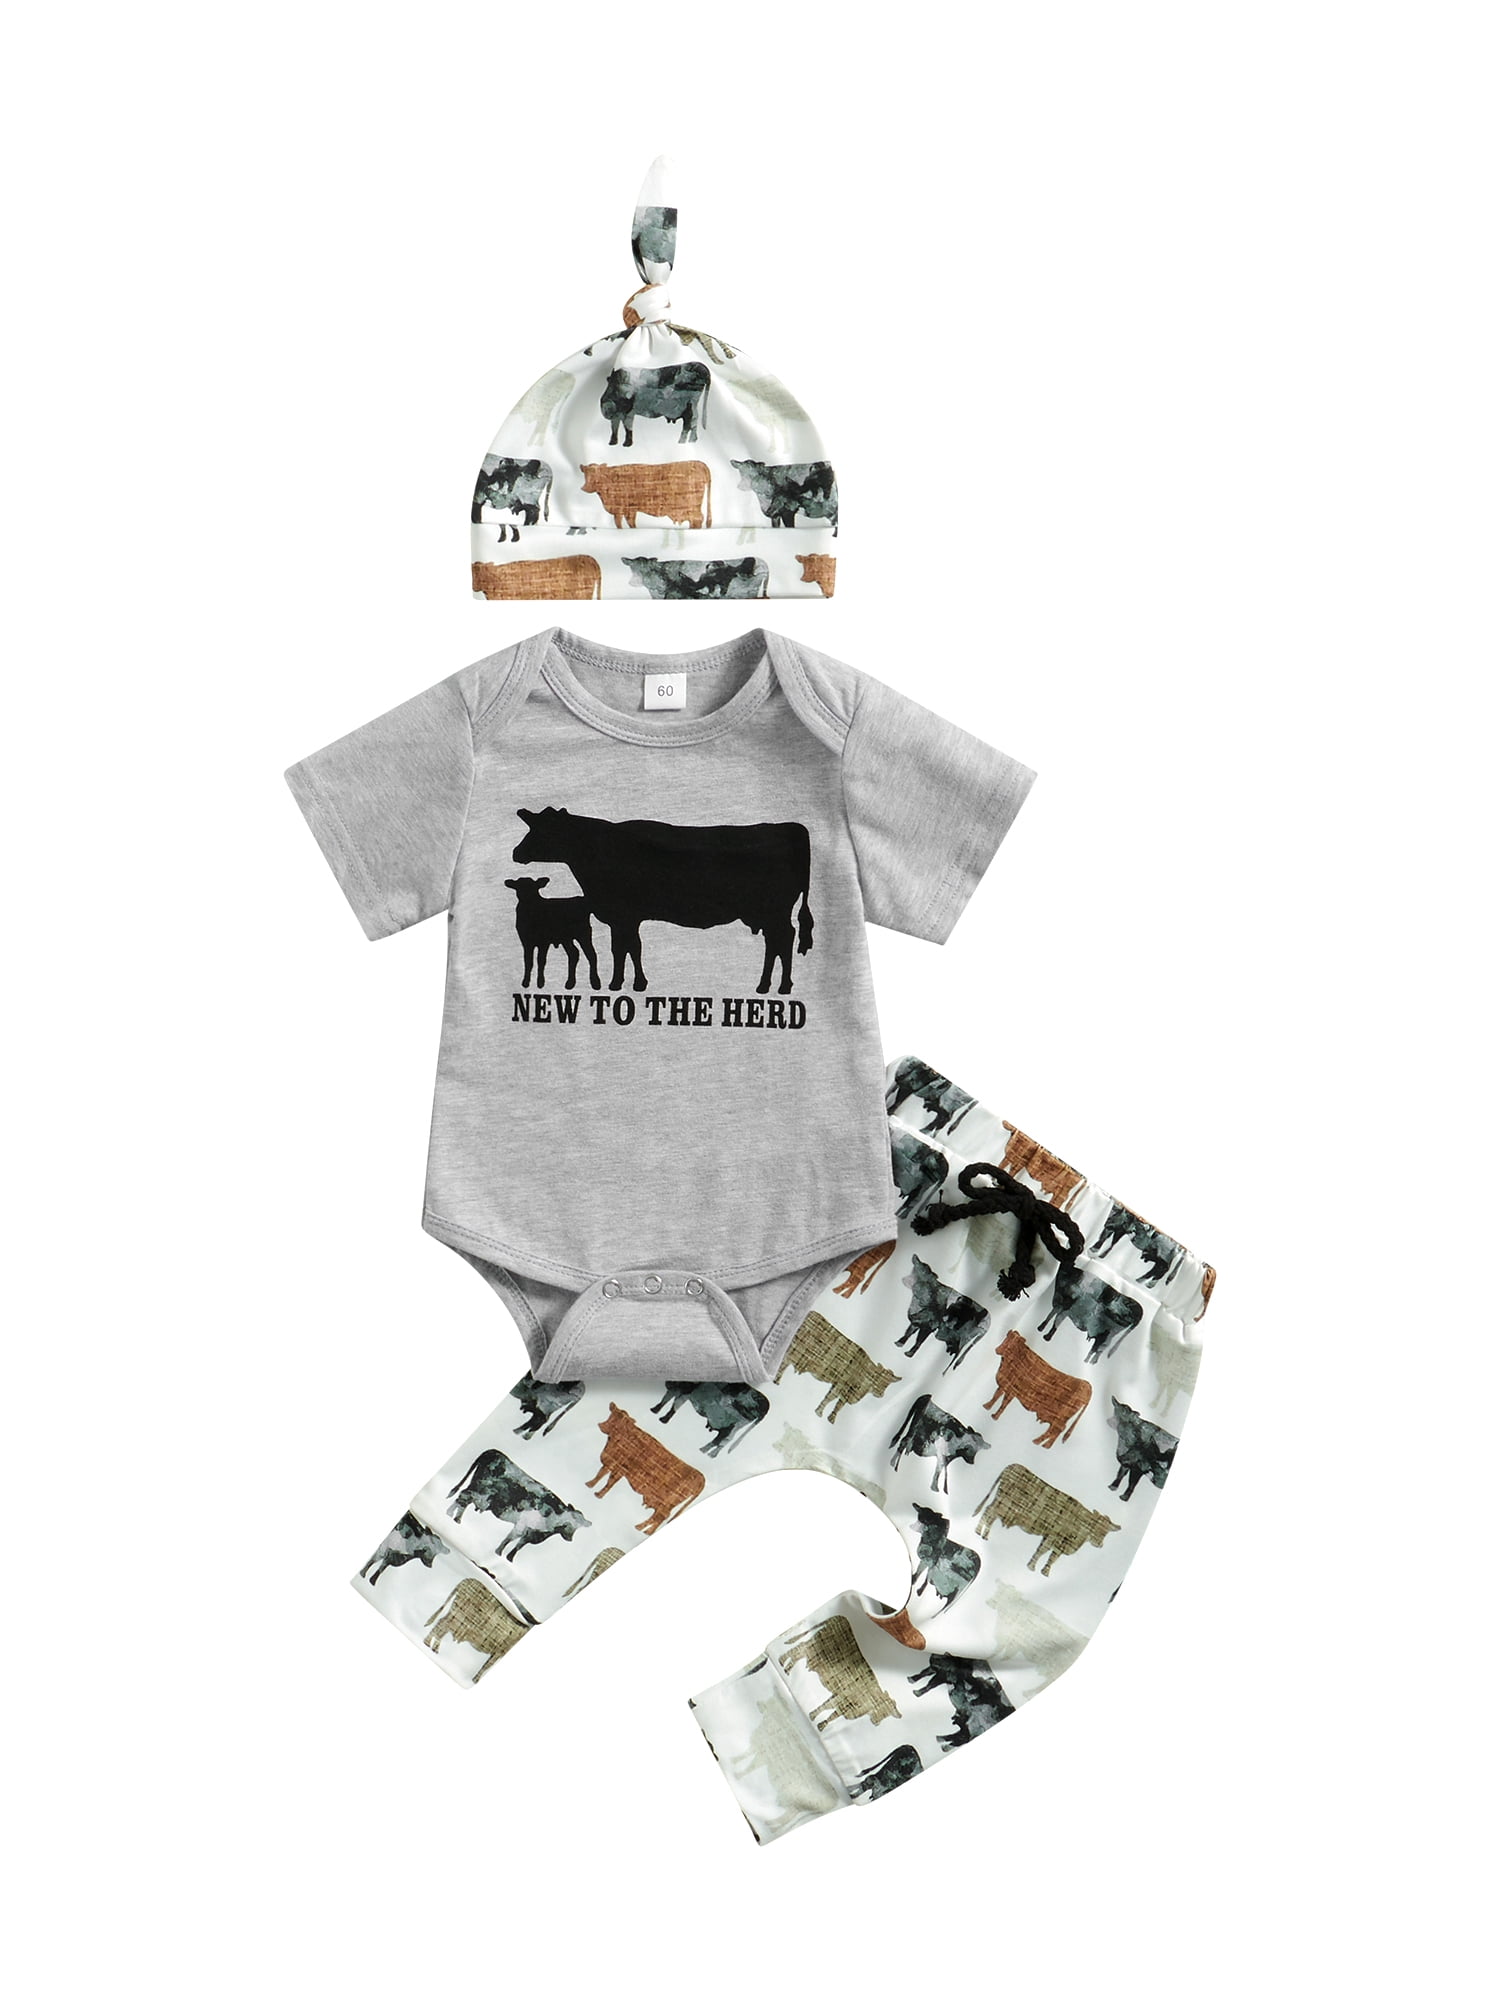 Moo Baby Cow Embroidered Crewneck Sweatshirt